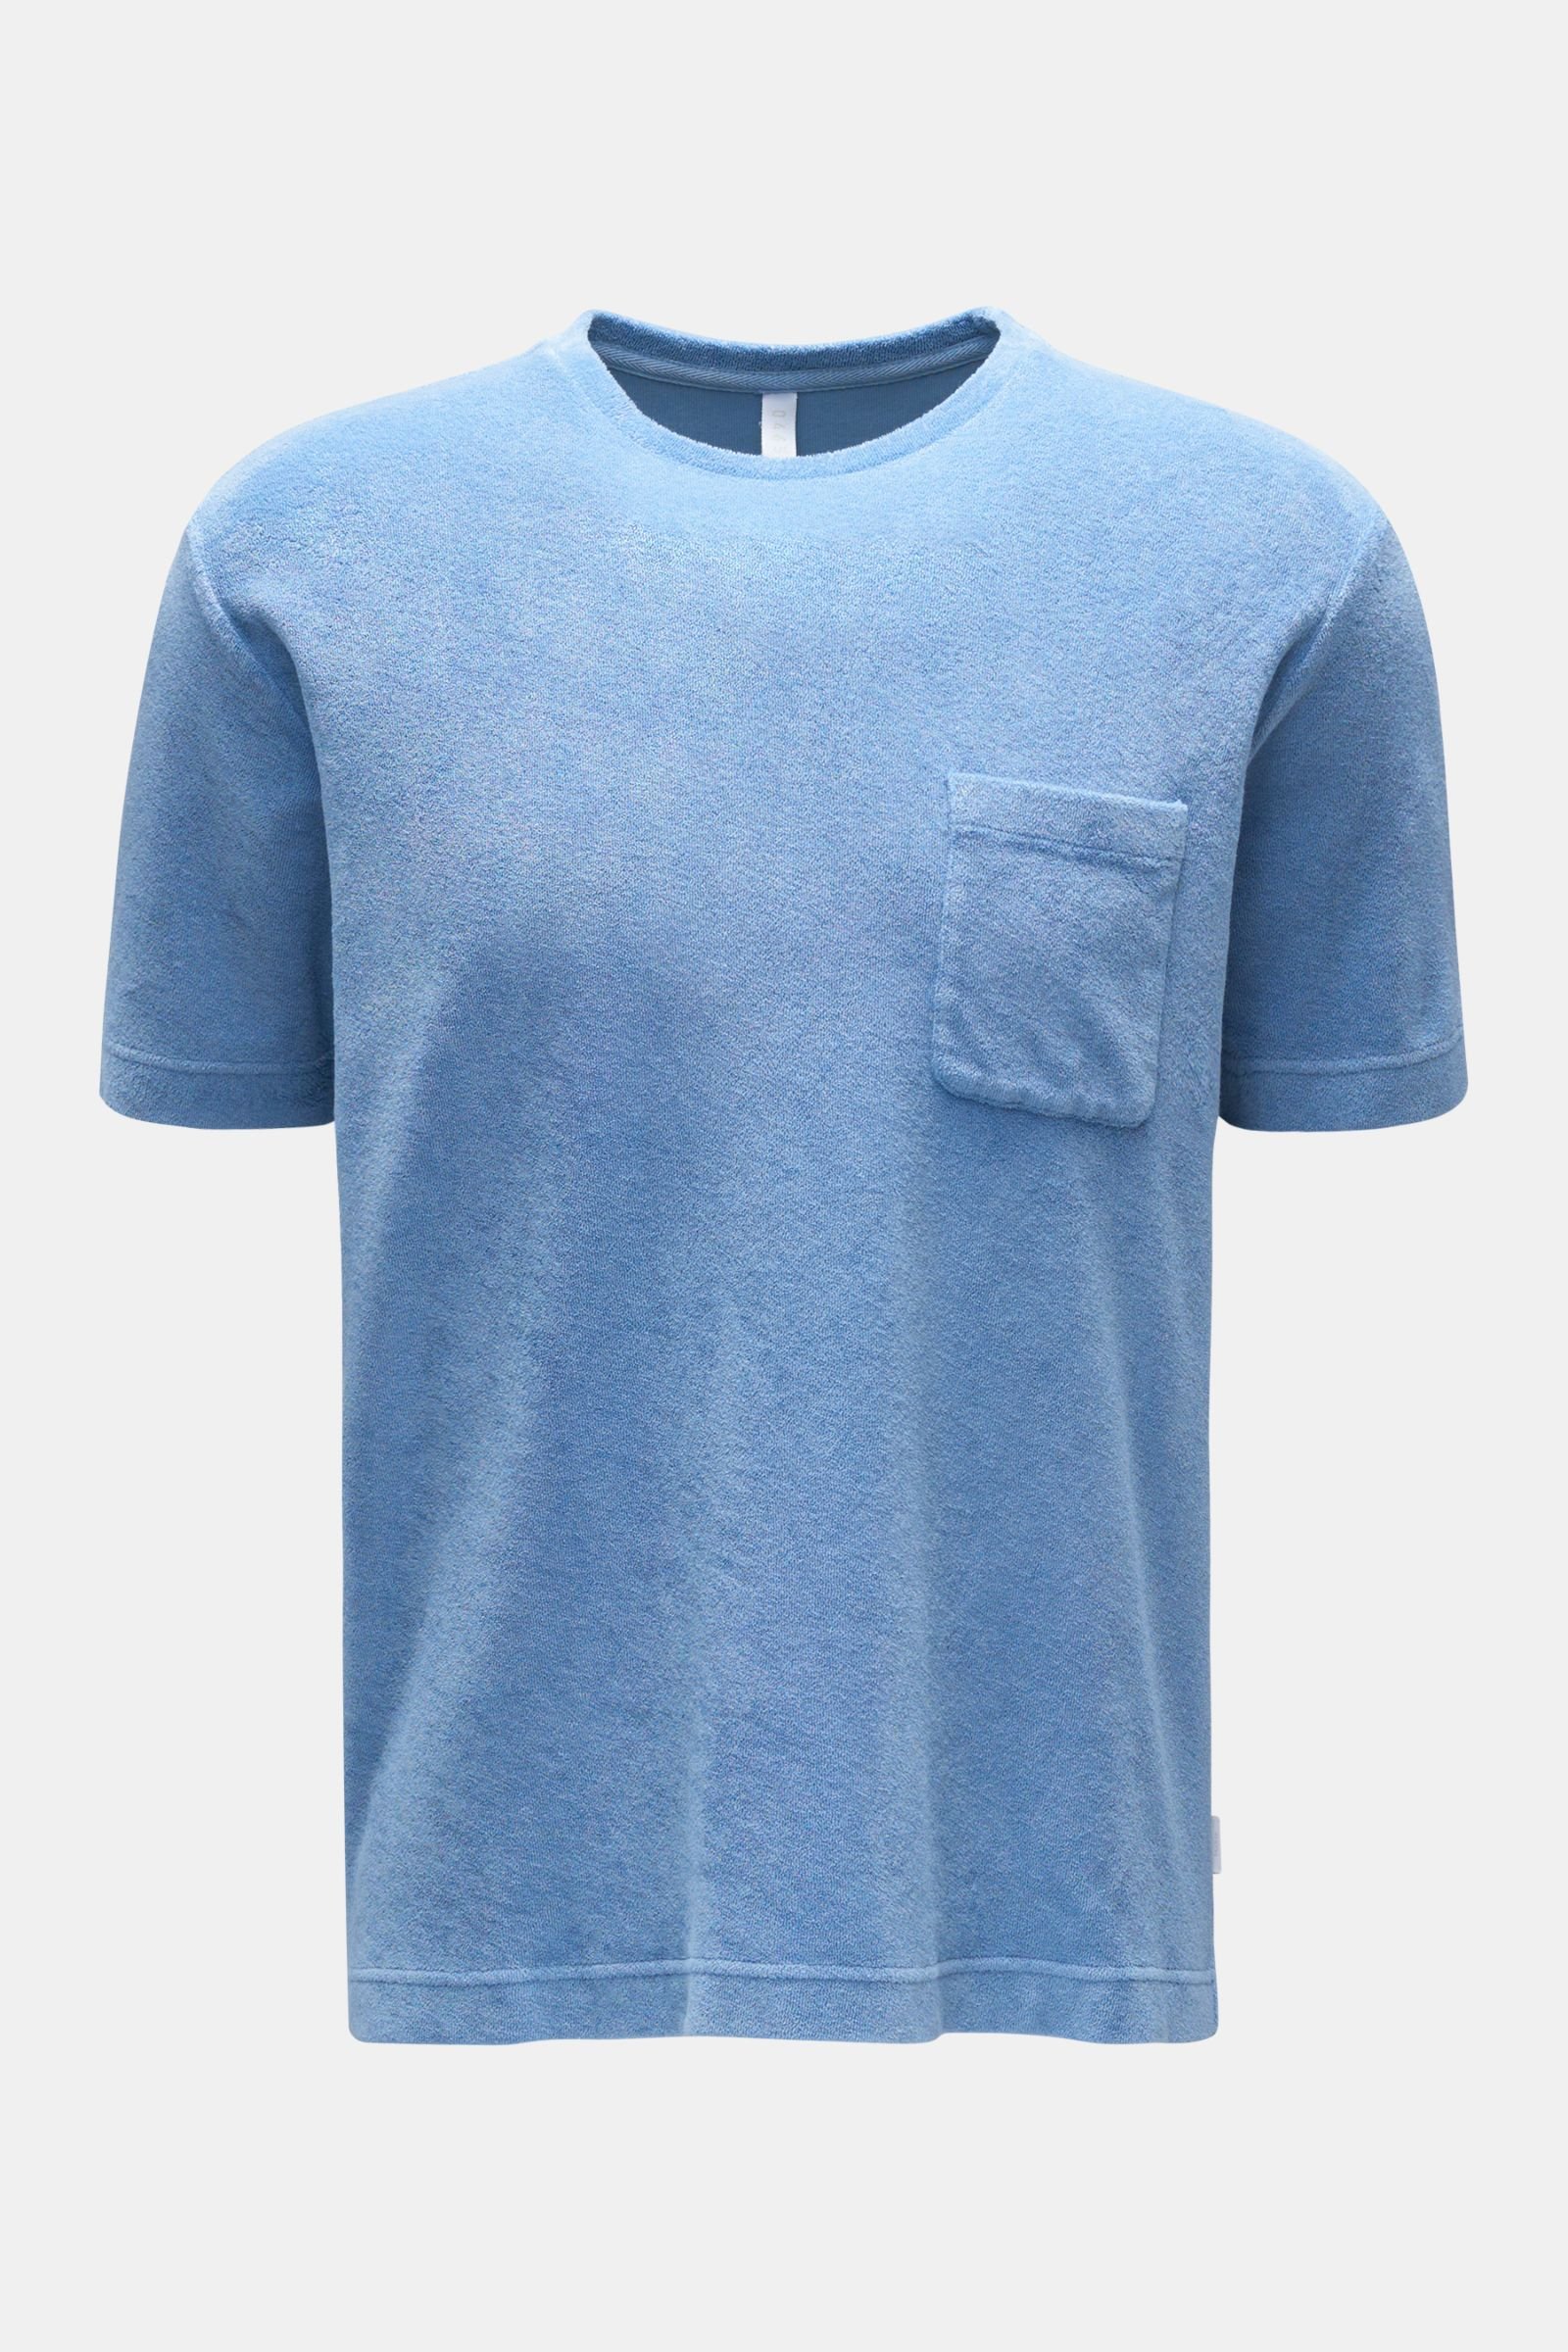 Terry crew neck T-shirt 'Terry Tee' light blue